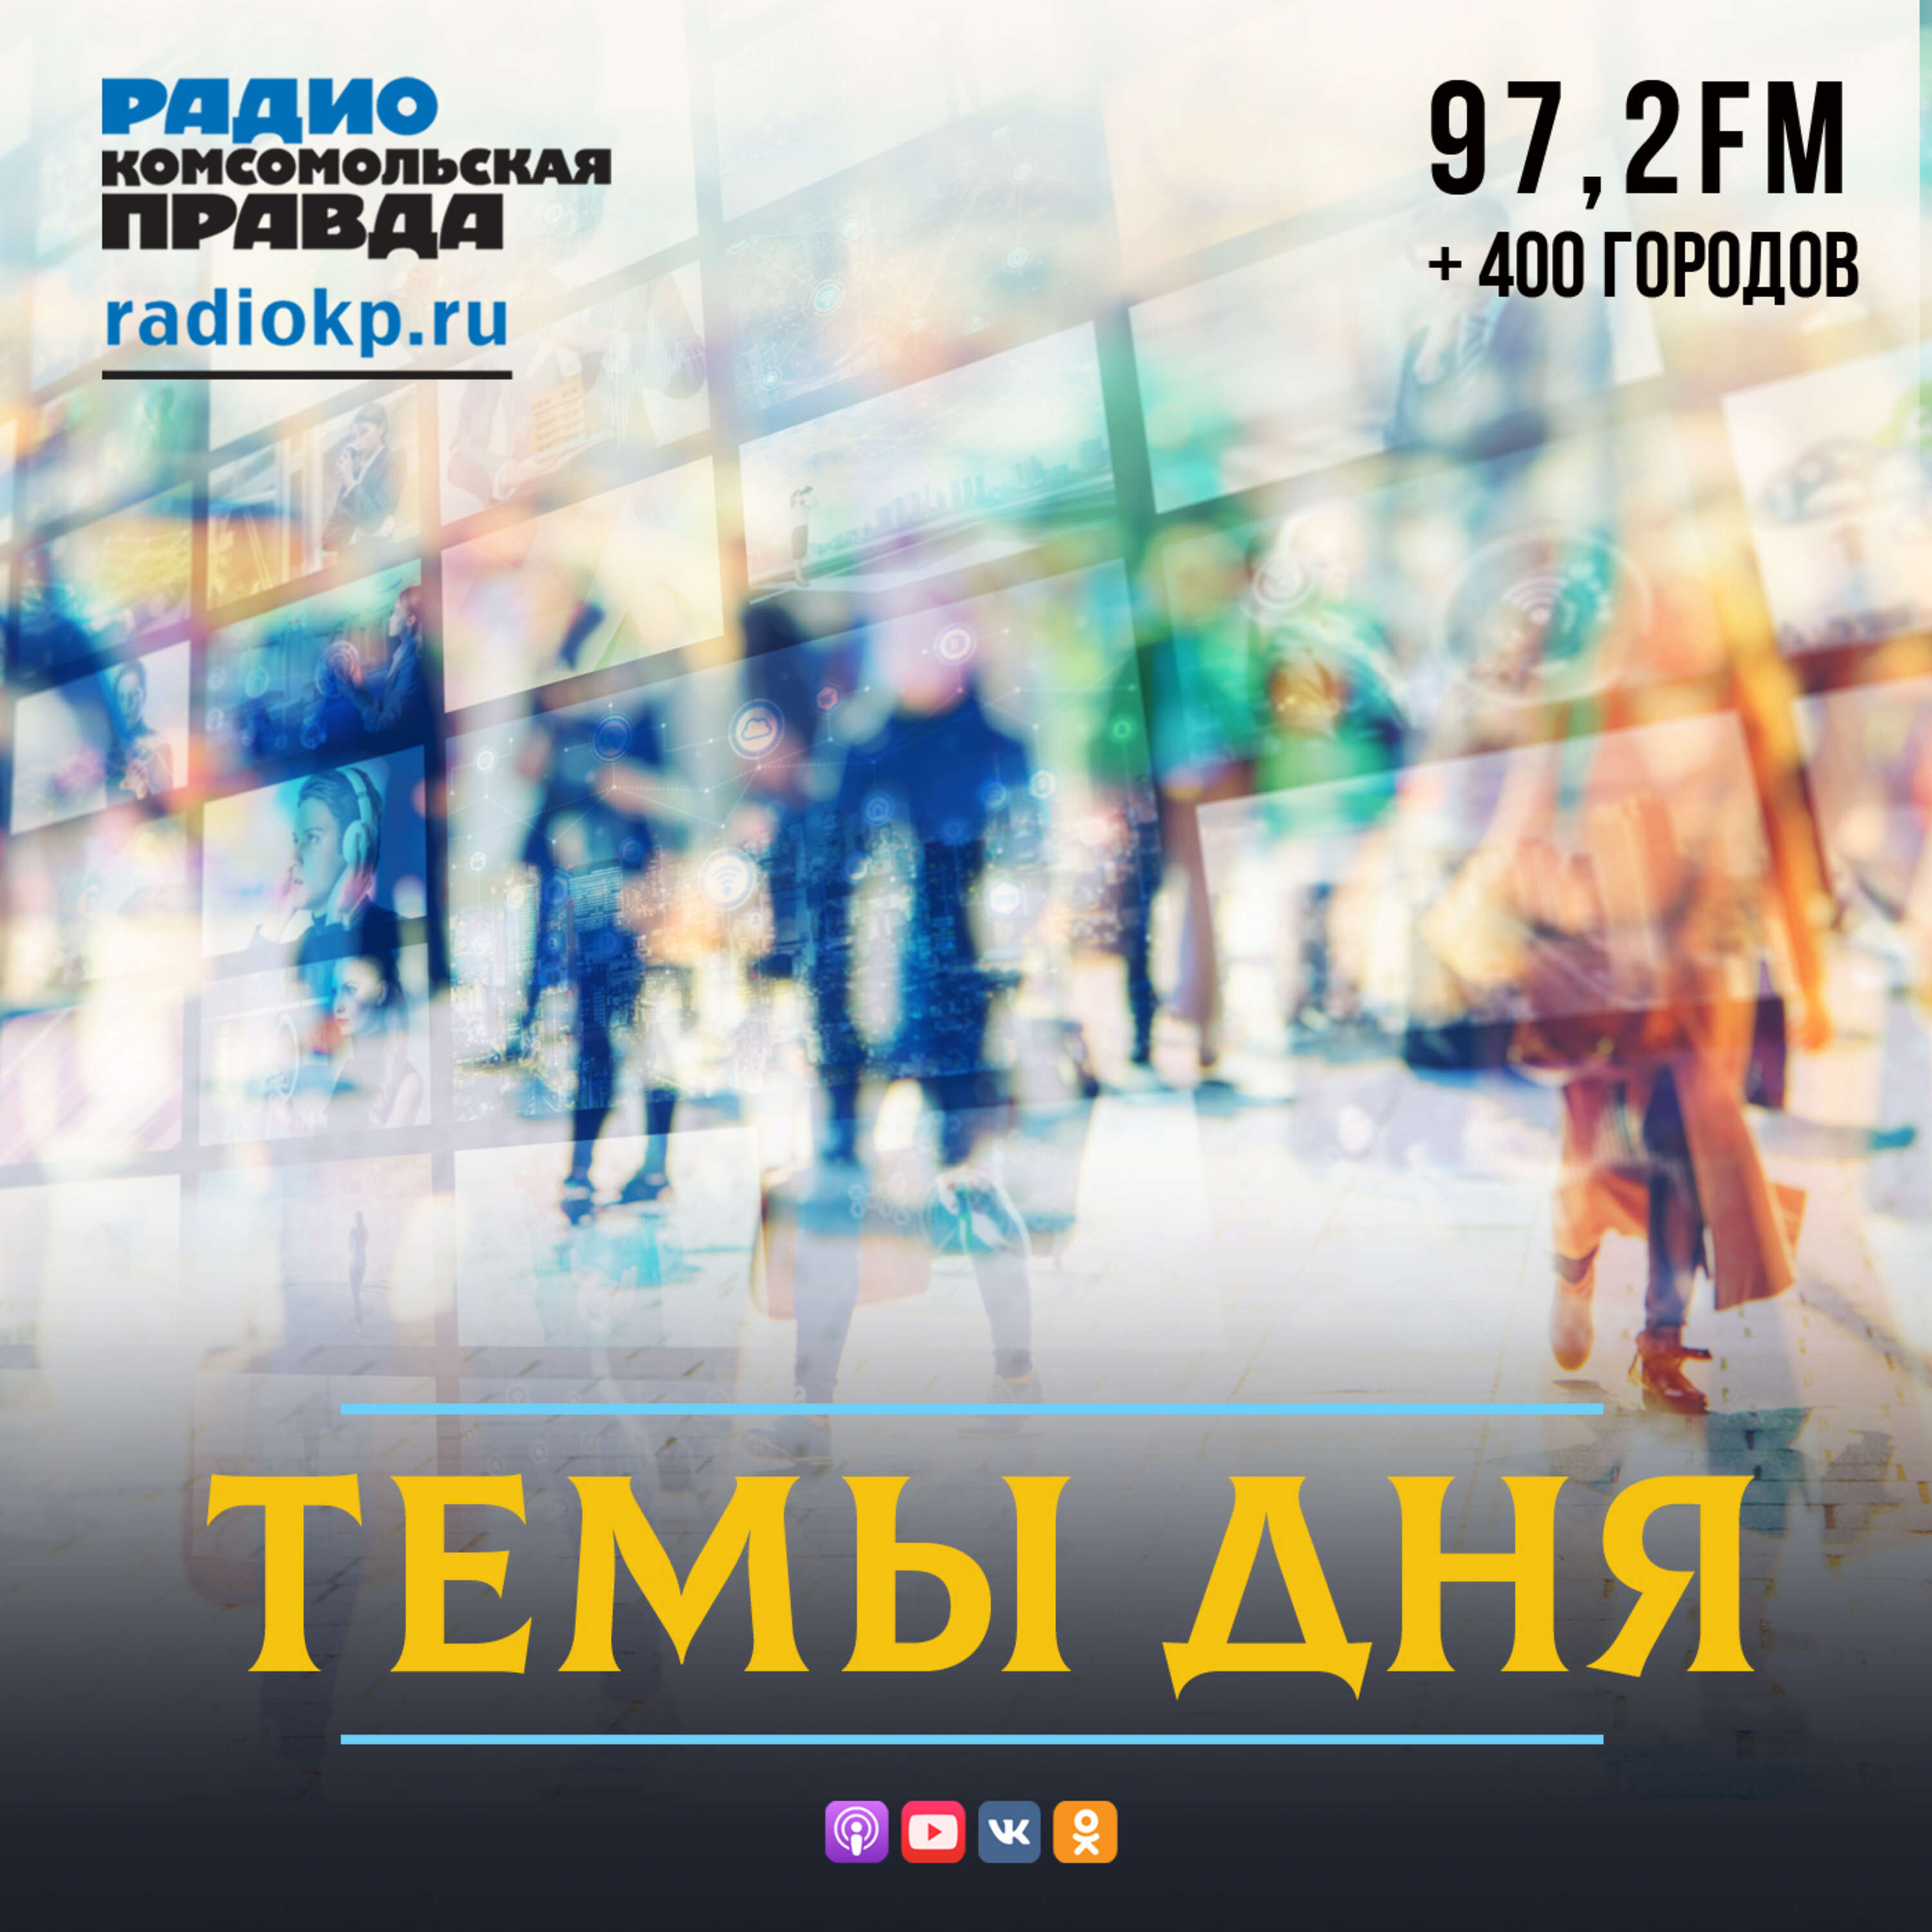 Темы дня на Радио КП:Радио «Комсомольская правда»